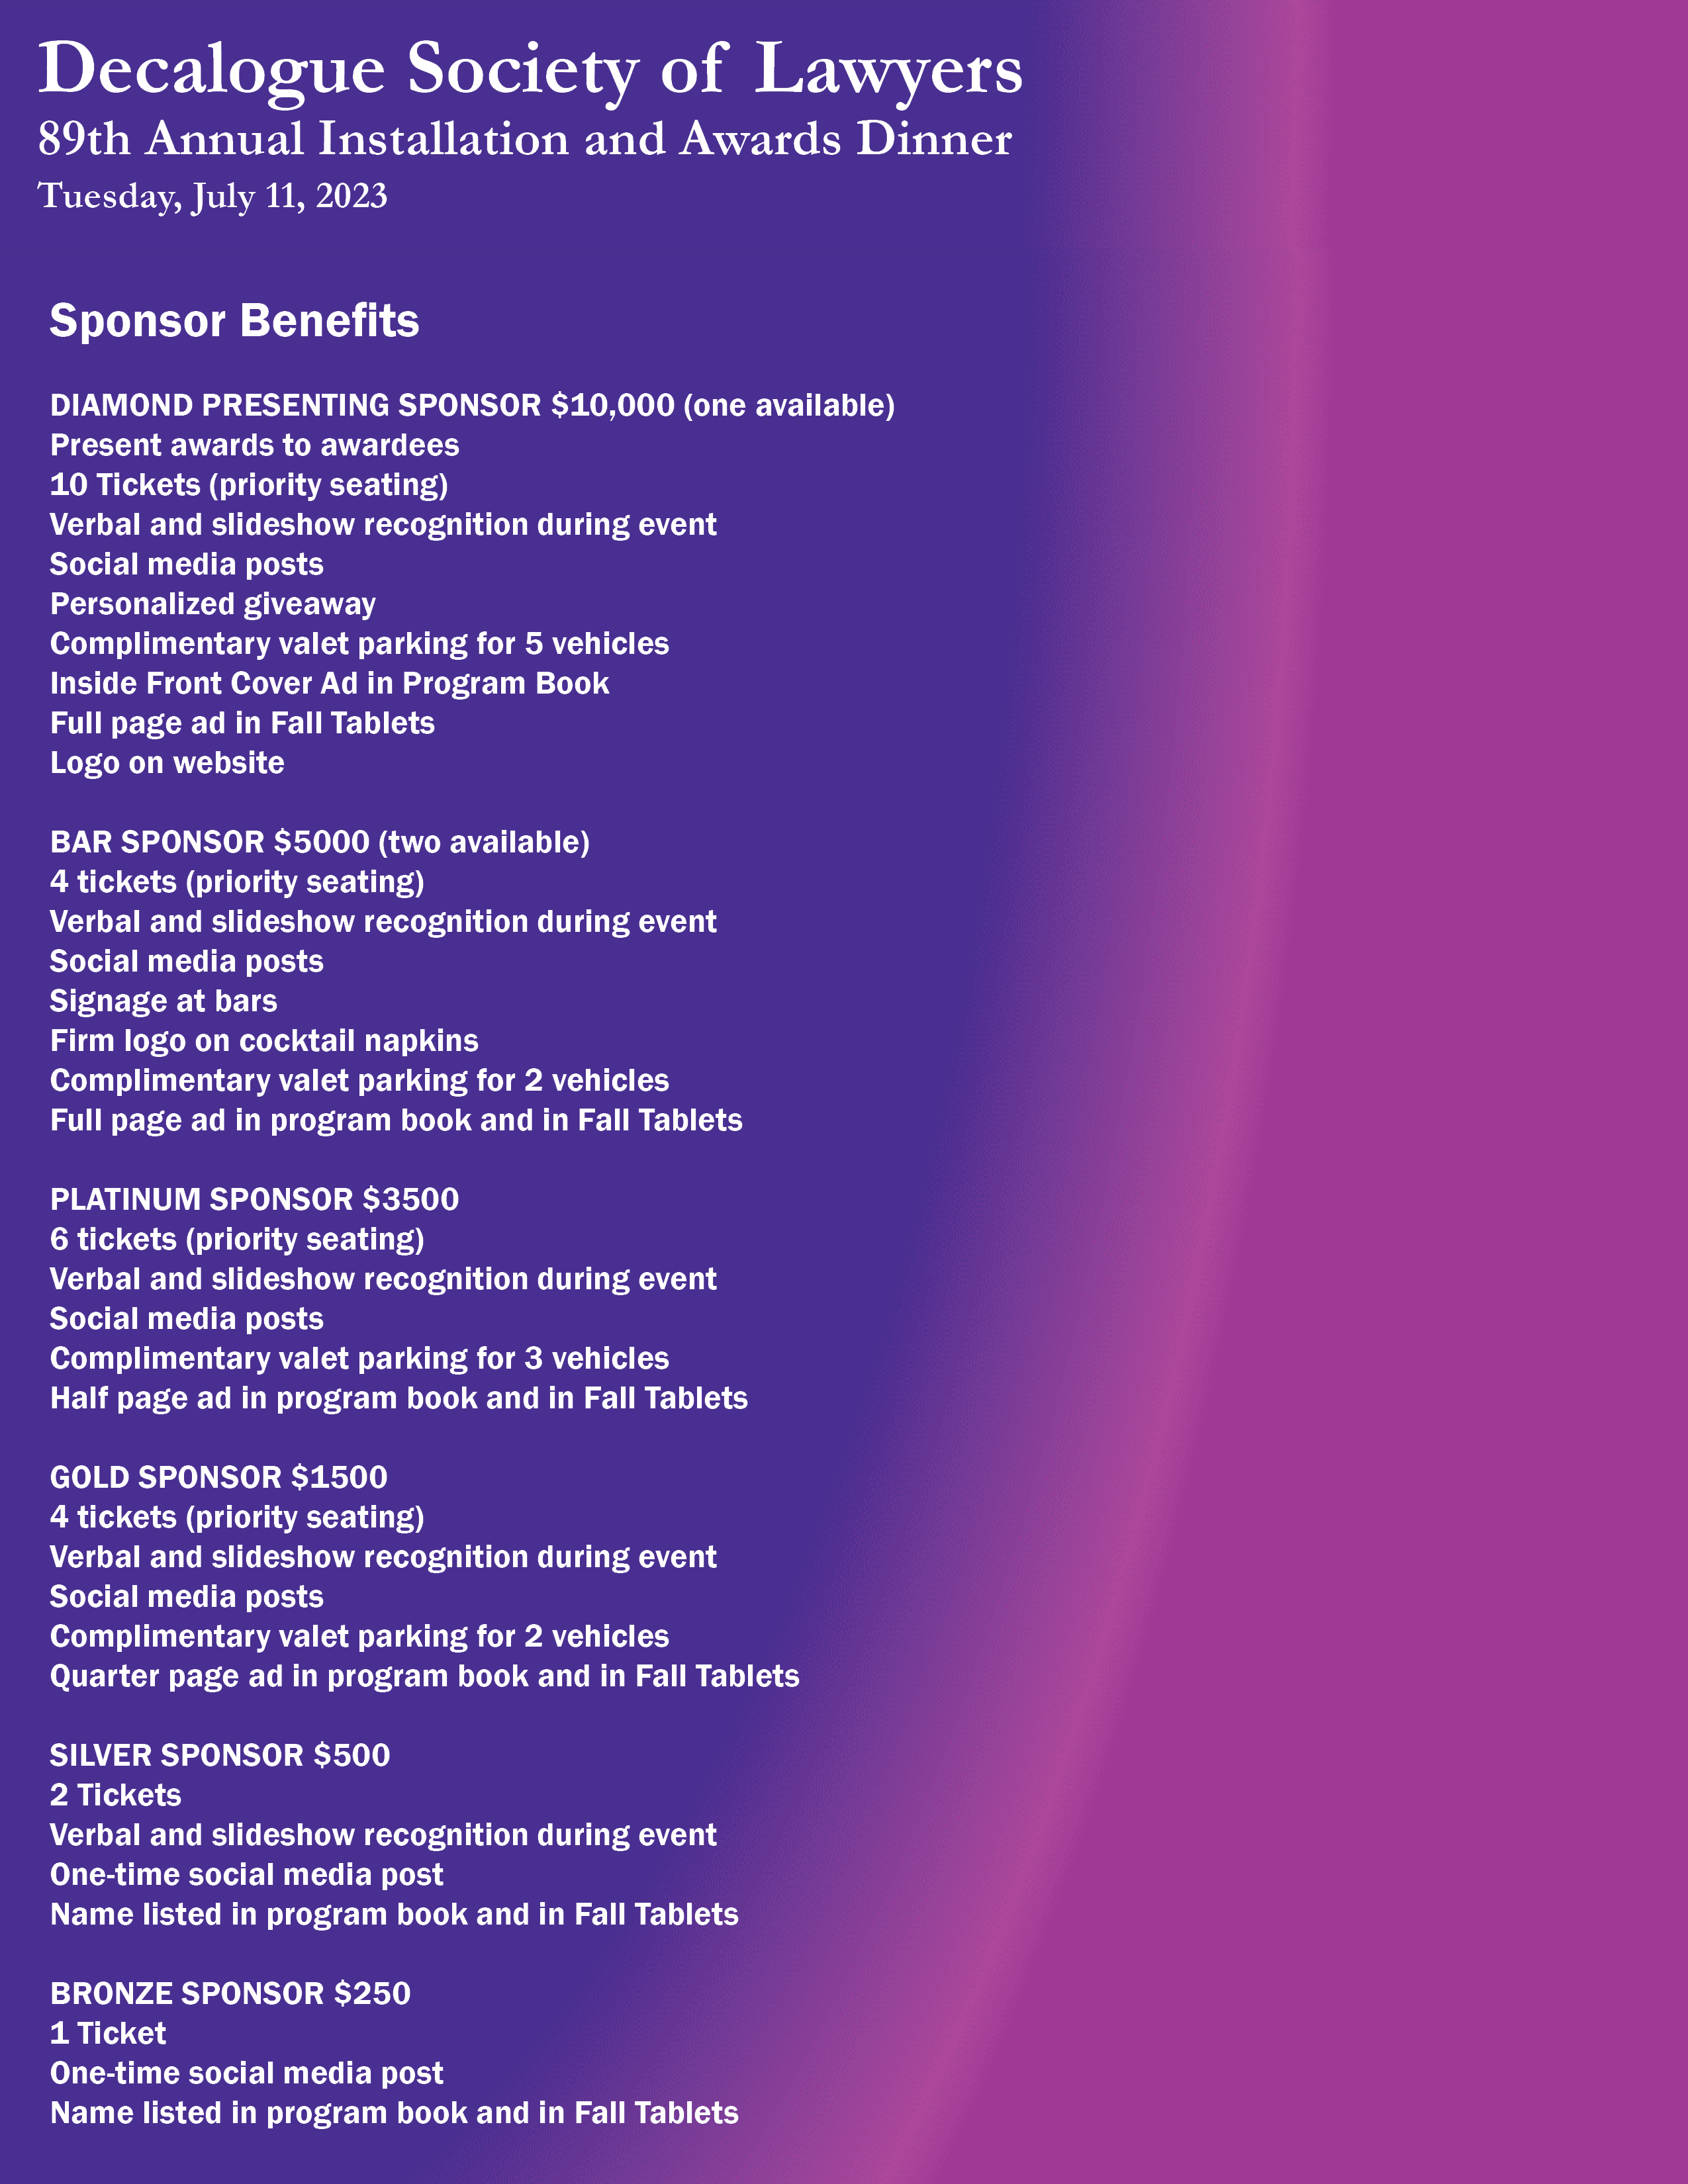 2023 Annual Dinner Sponsor Benefits